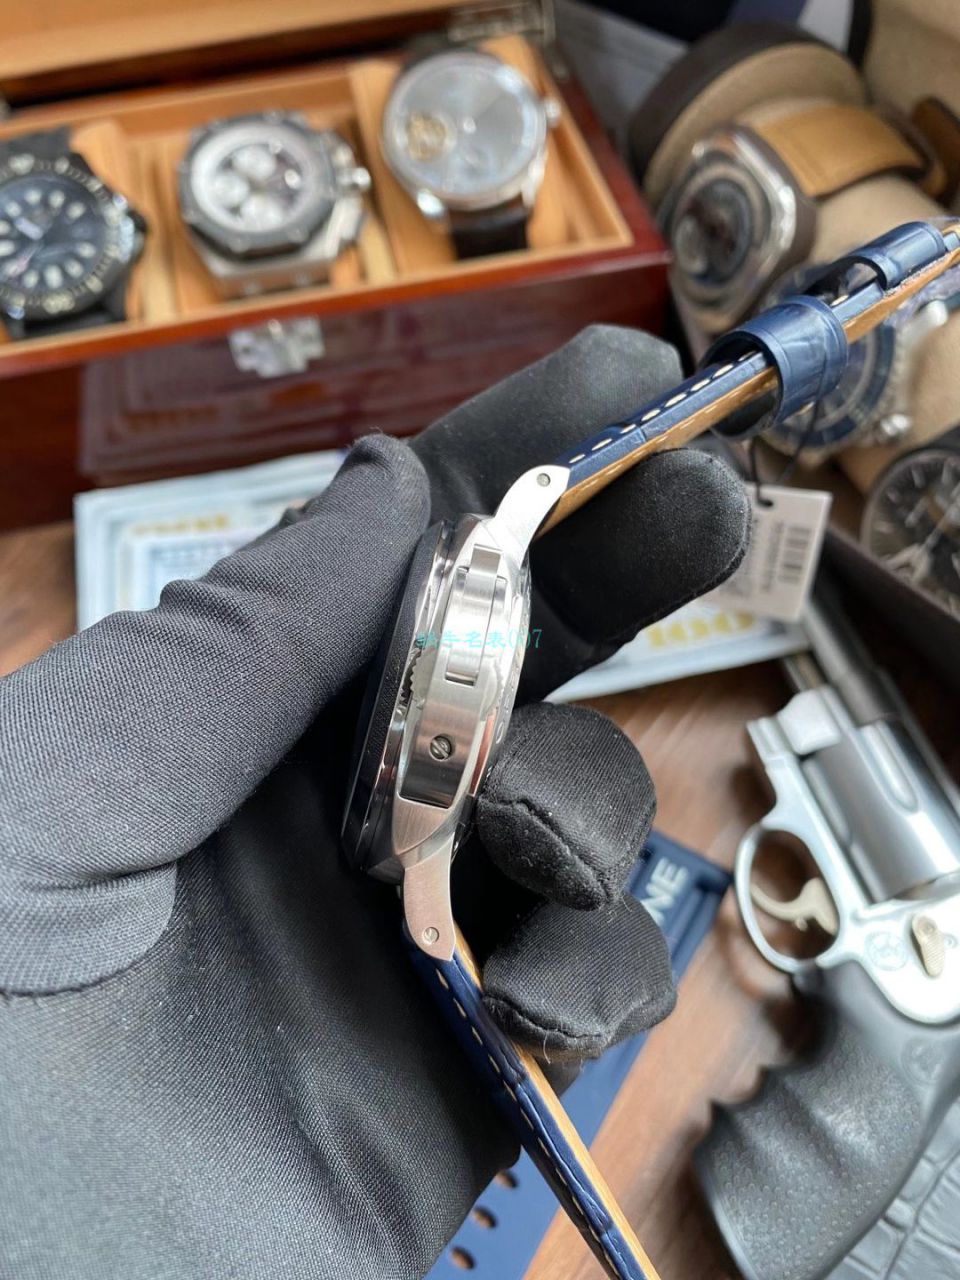 VS厂沛纳海1比1顶级复刻手表GMT两地时PAM01033腕表 / VSPAM01033